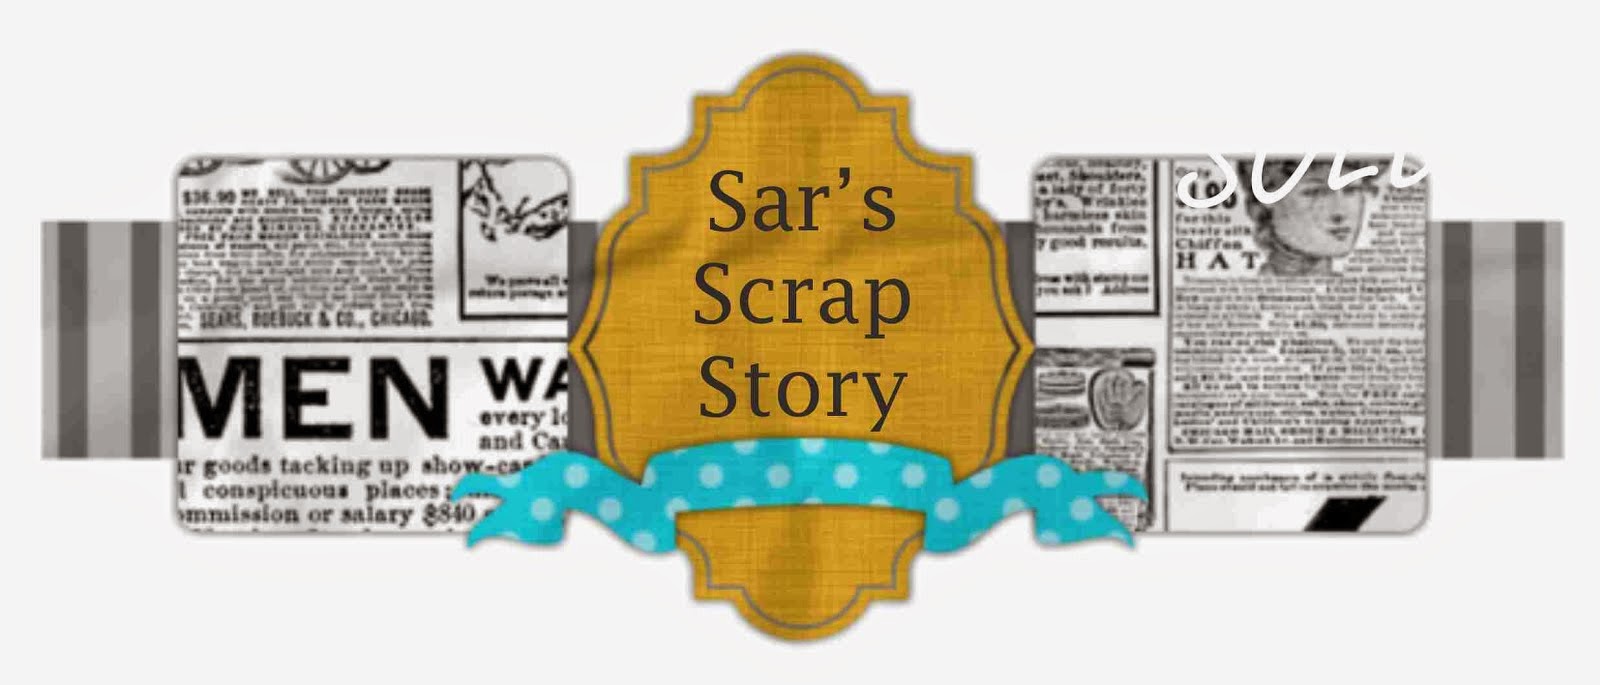 Sar's Scrap Story